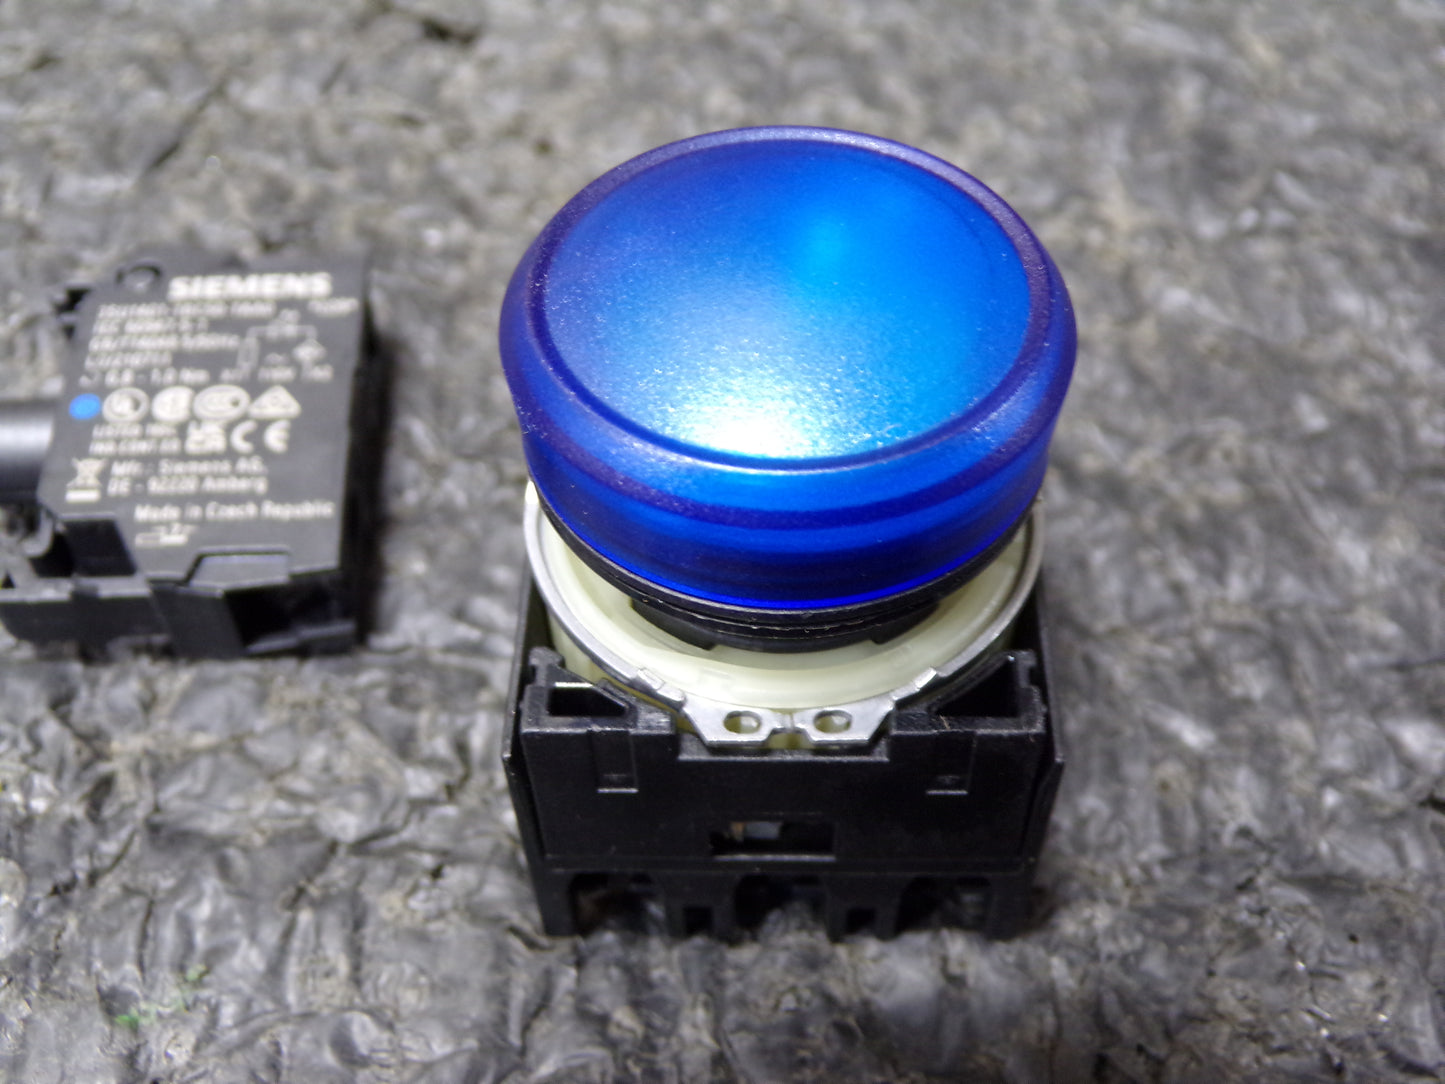 Siemens 3SU11036AA501AA0, Indicator Light, Blue, LED, 22mm (CR00678-WTA18)